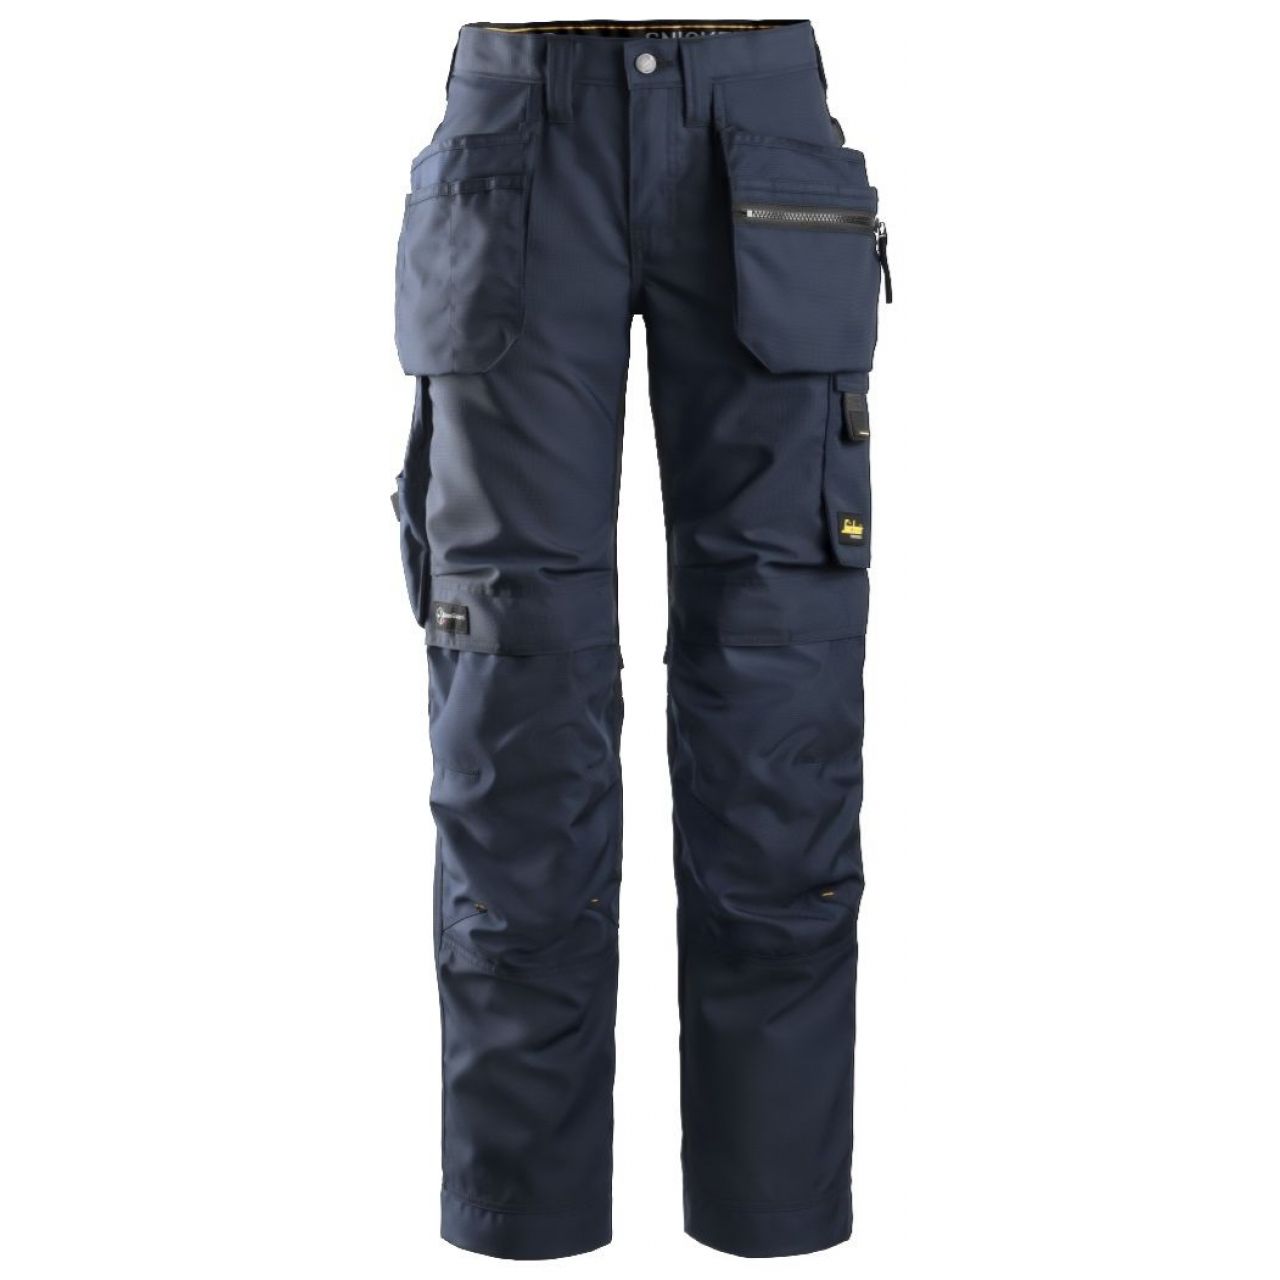 Pantalon de mujer AllroundWork+ con bolsillos flotantes azul marino-negro talla 092